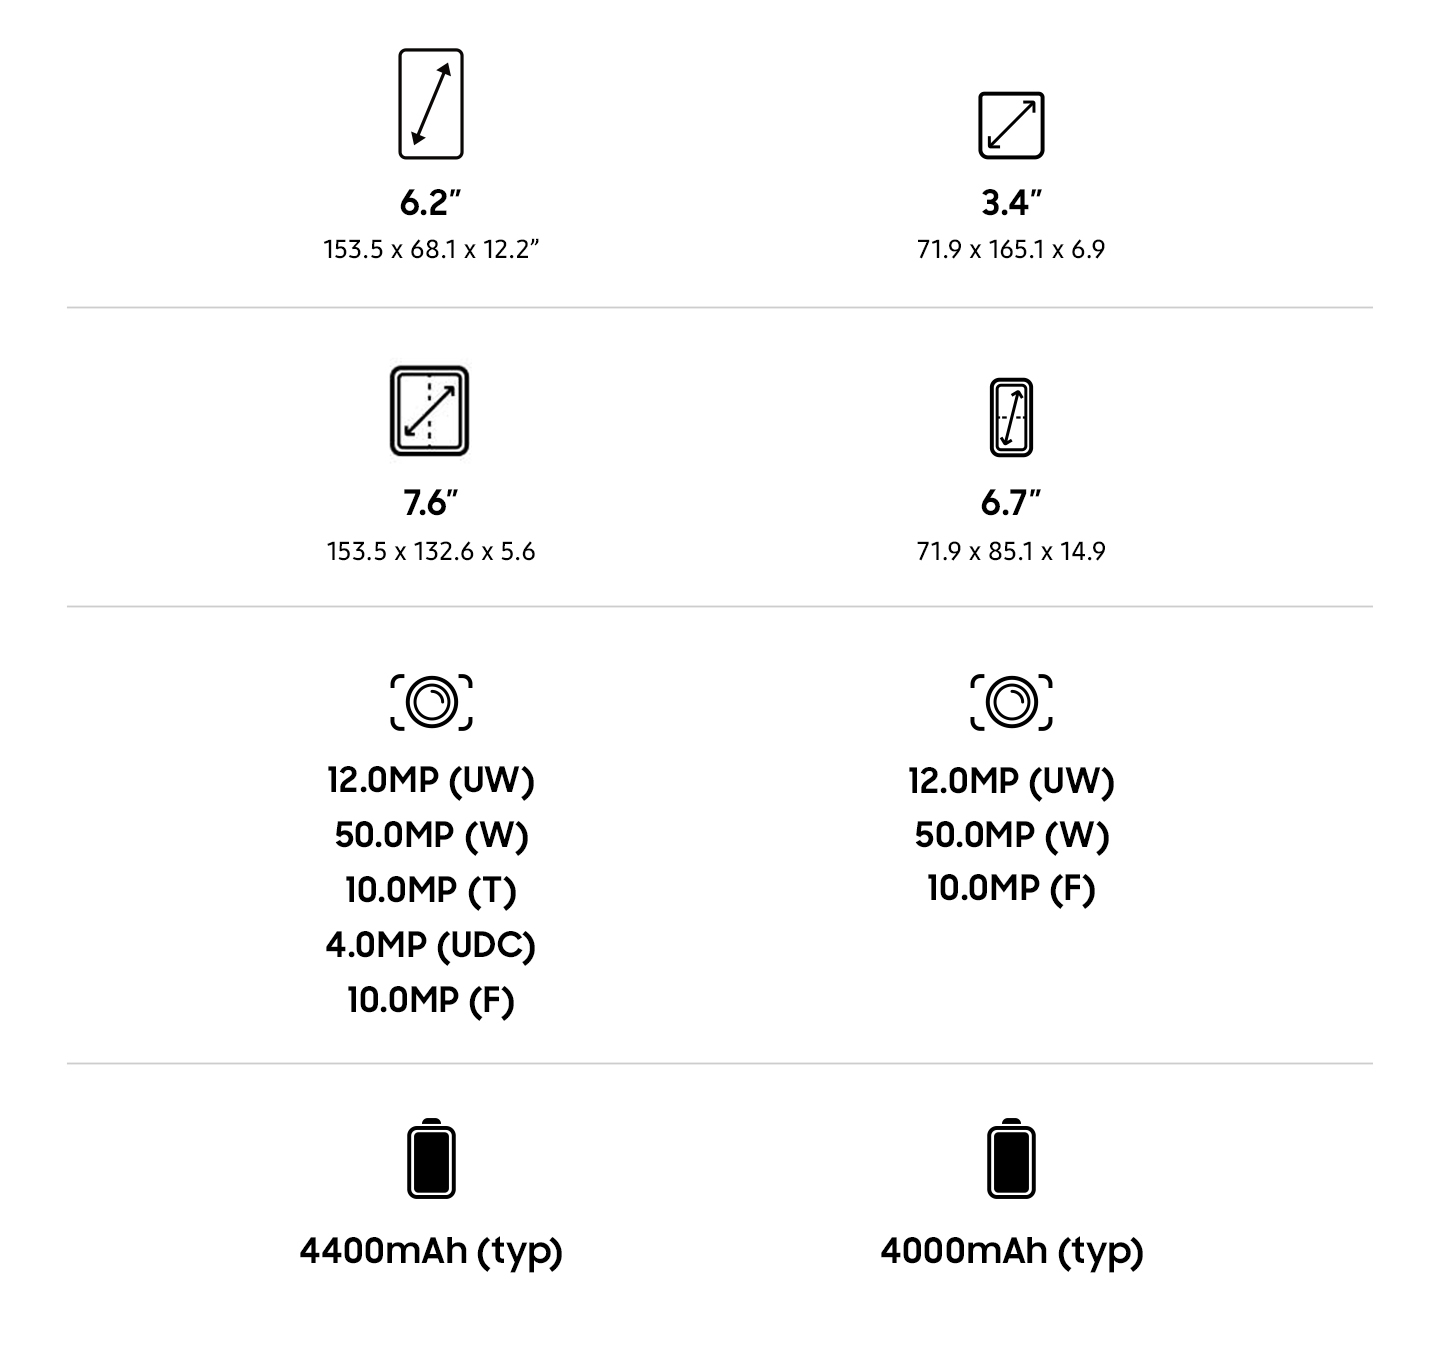 Galaxy Z Fold5 | Galaxy Z Flip5